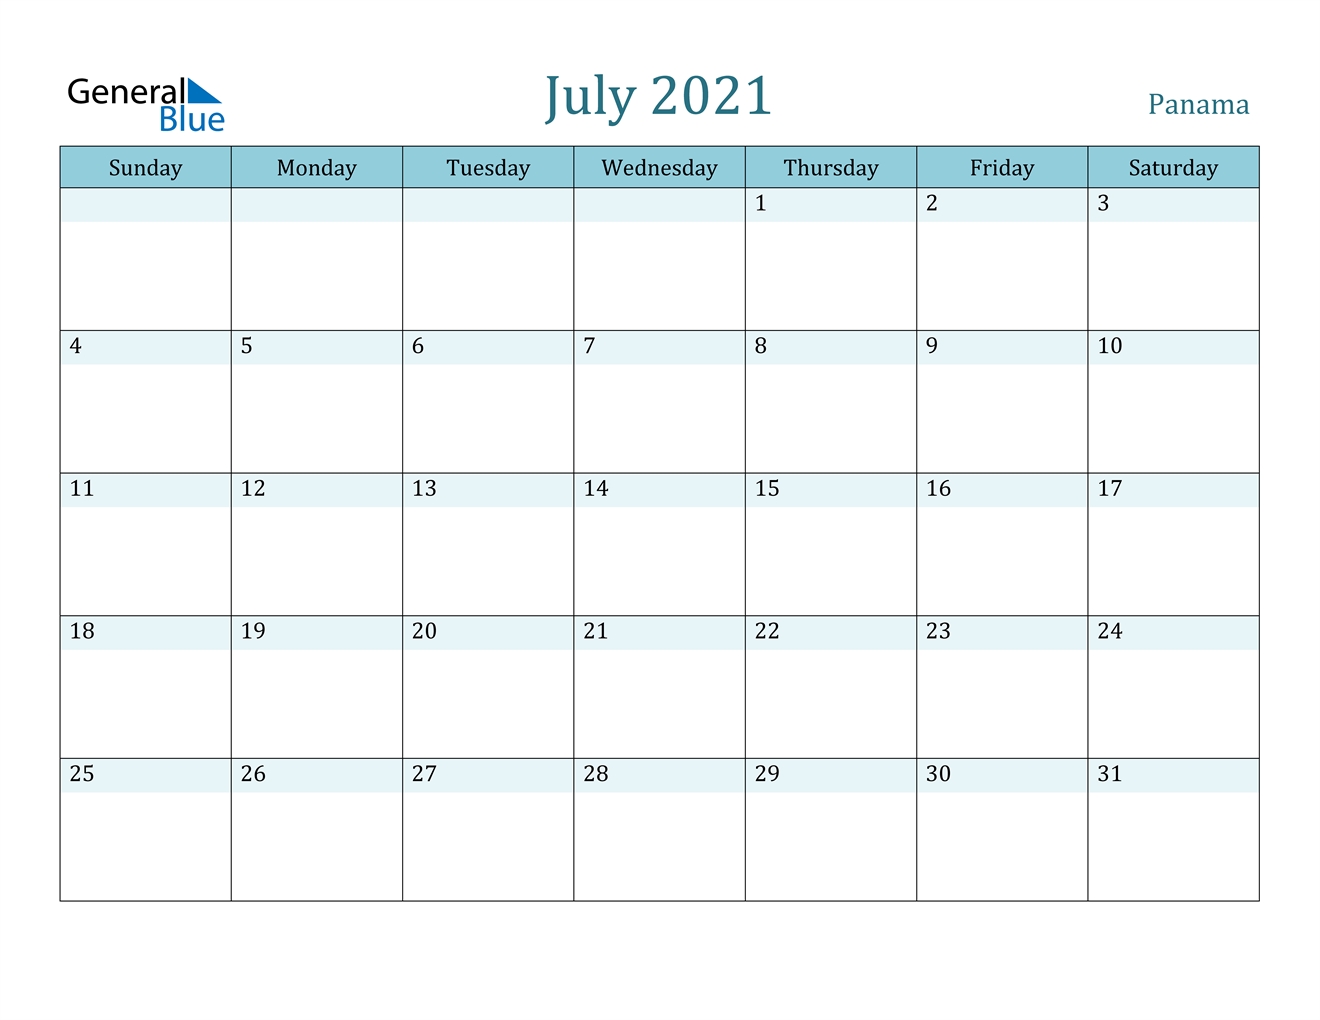 July 2021 Calendar - Panama